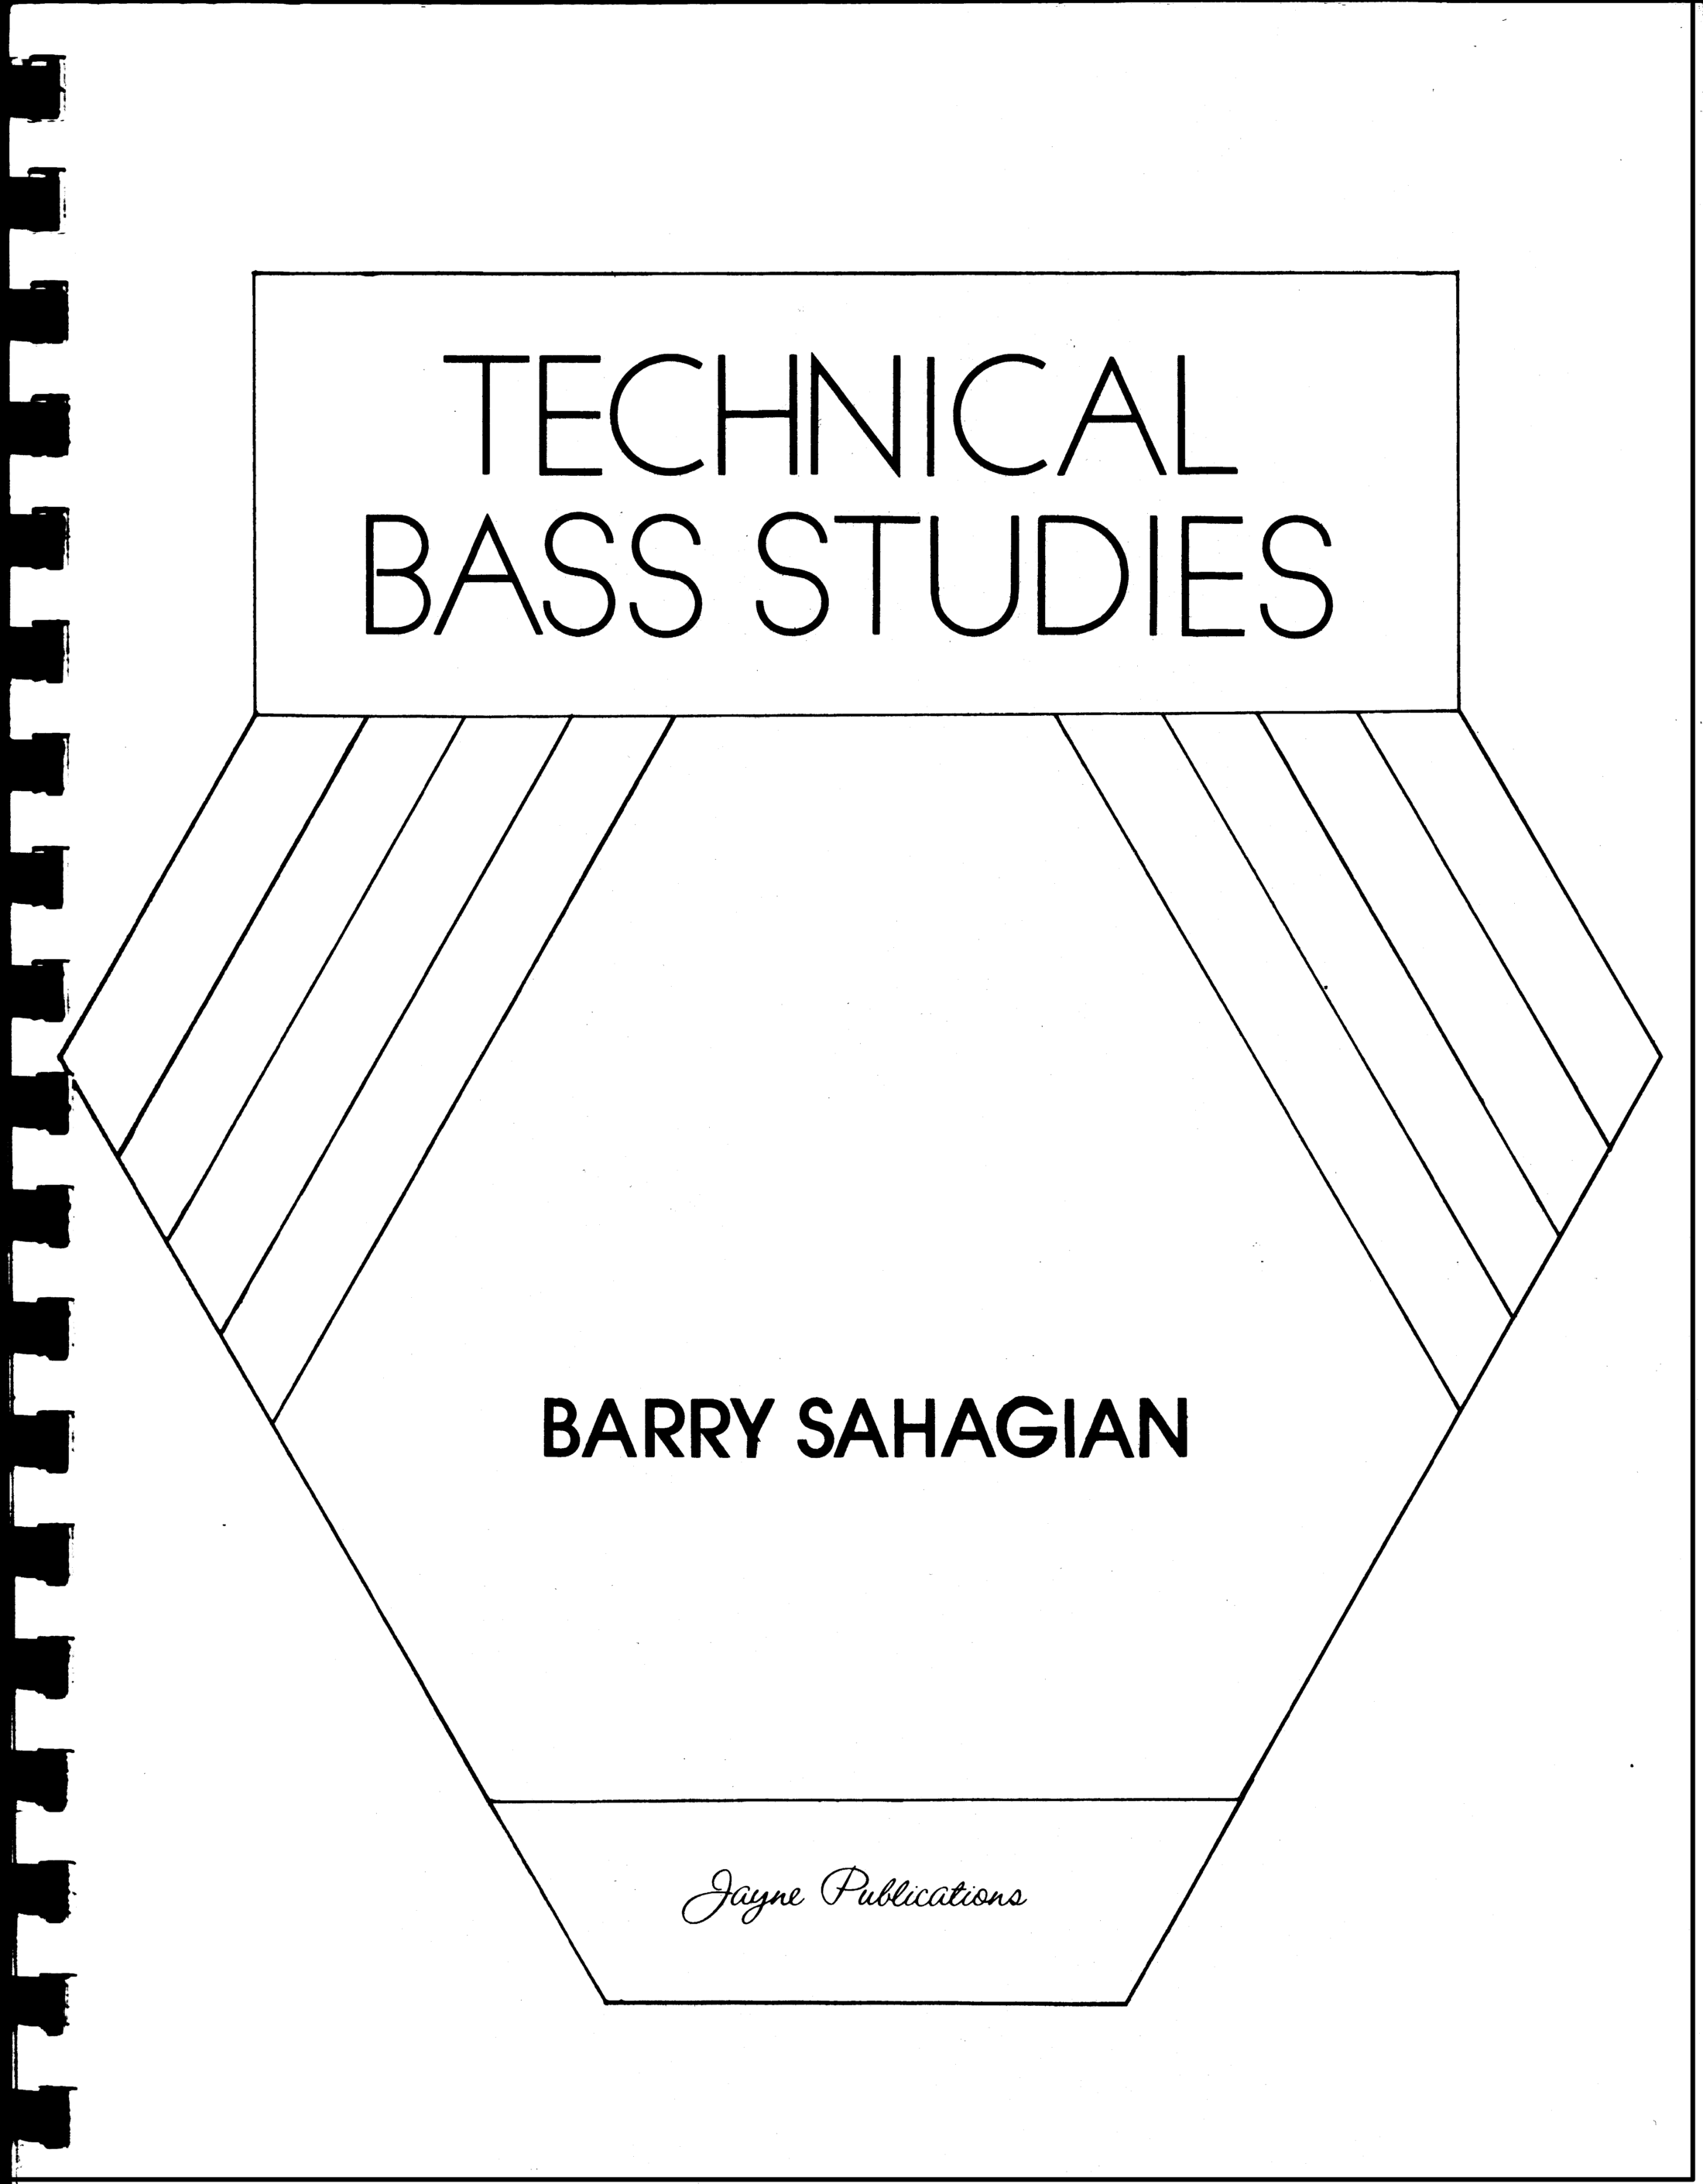 Technical Bass Studies